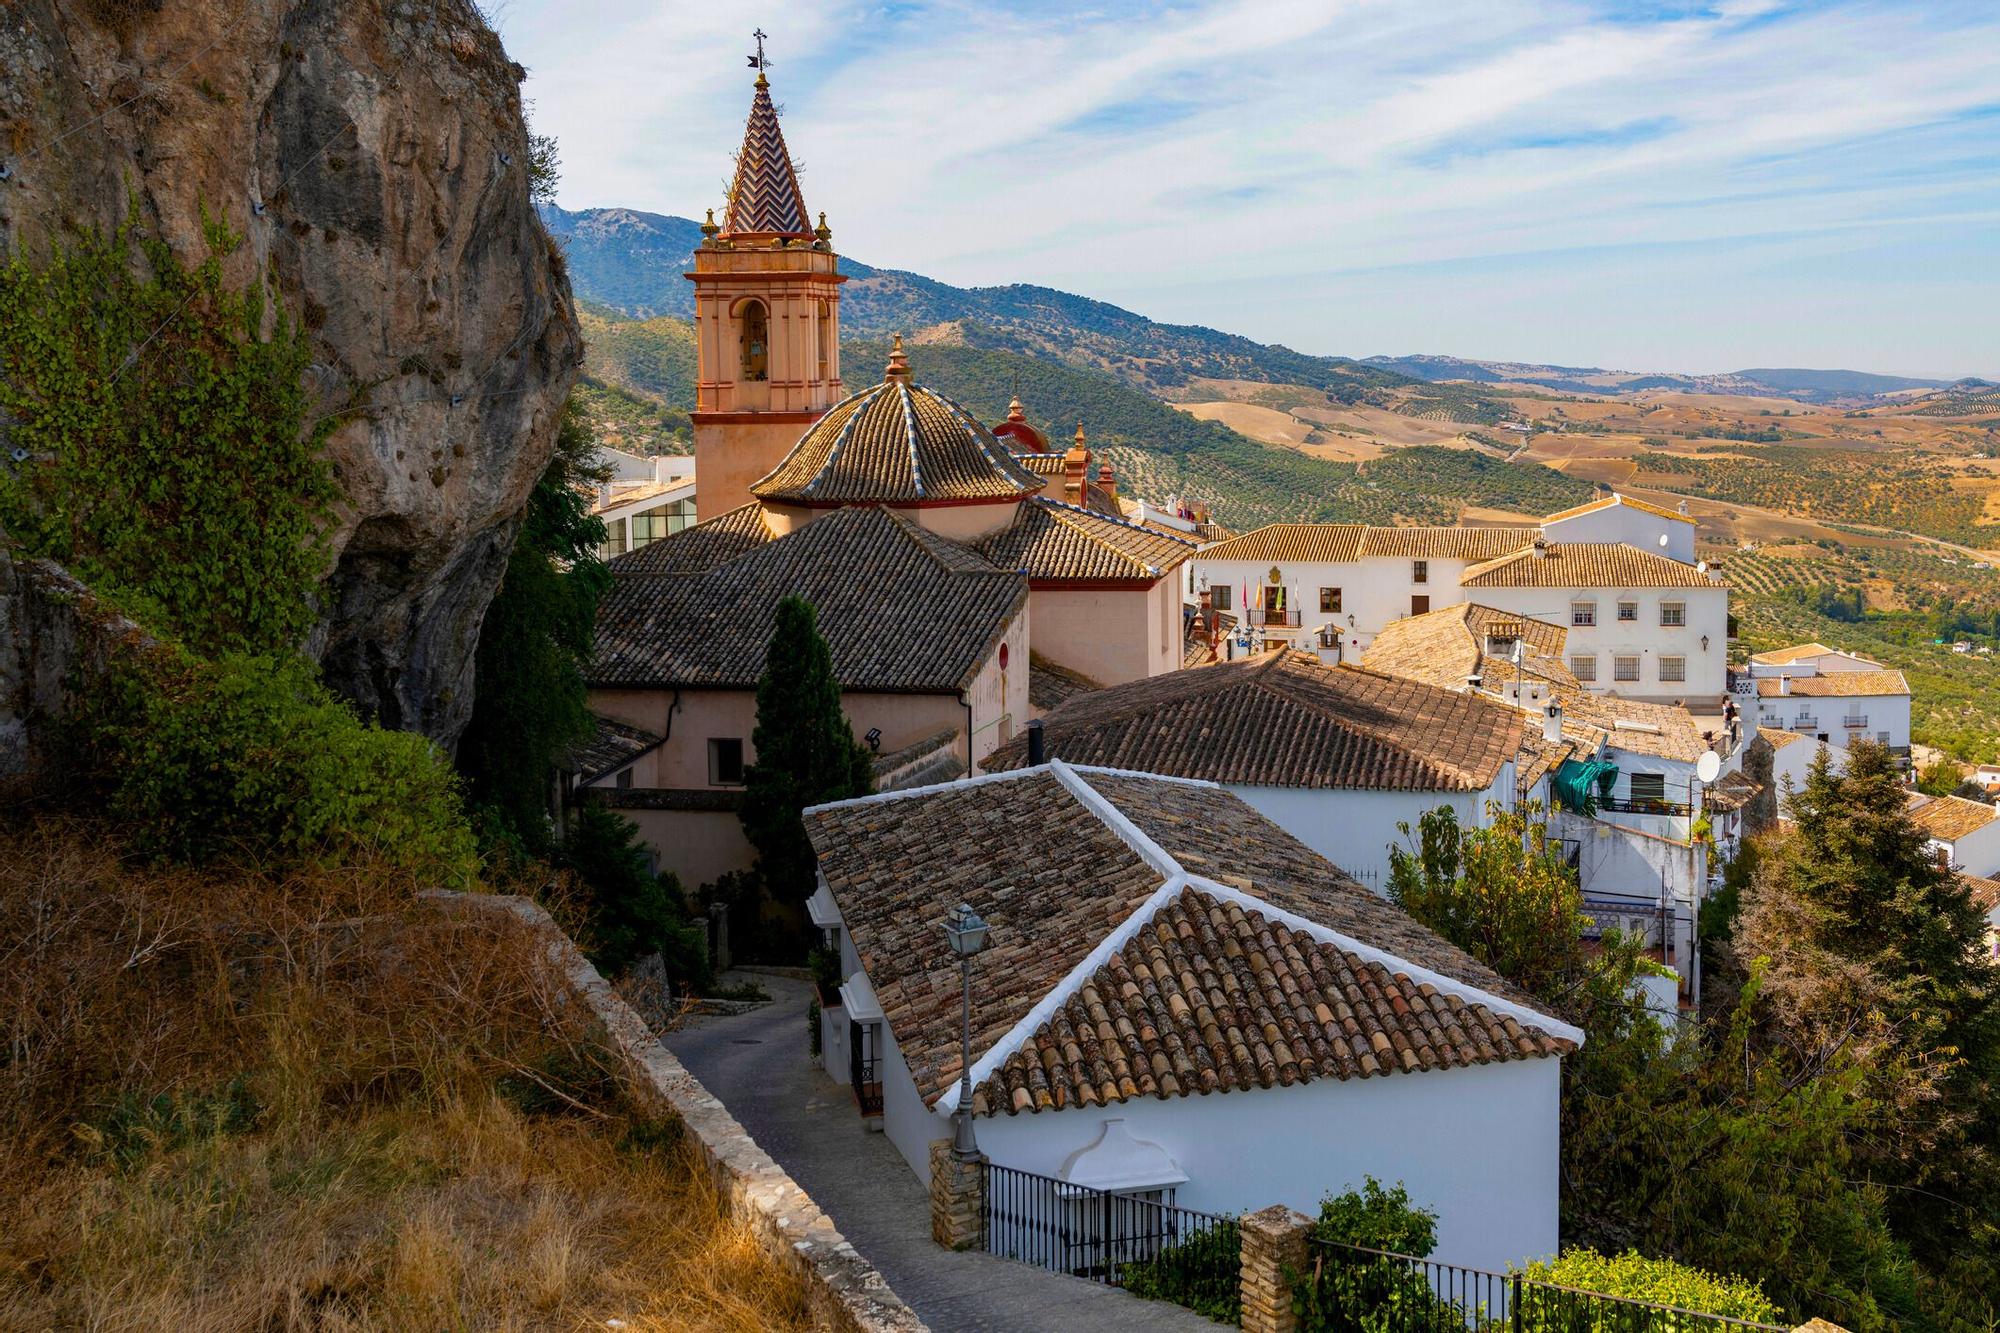 Uno de los pueblos más bonitos de España según la Inteligencia Artificial